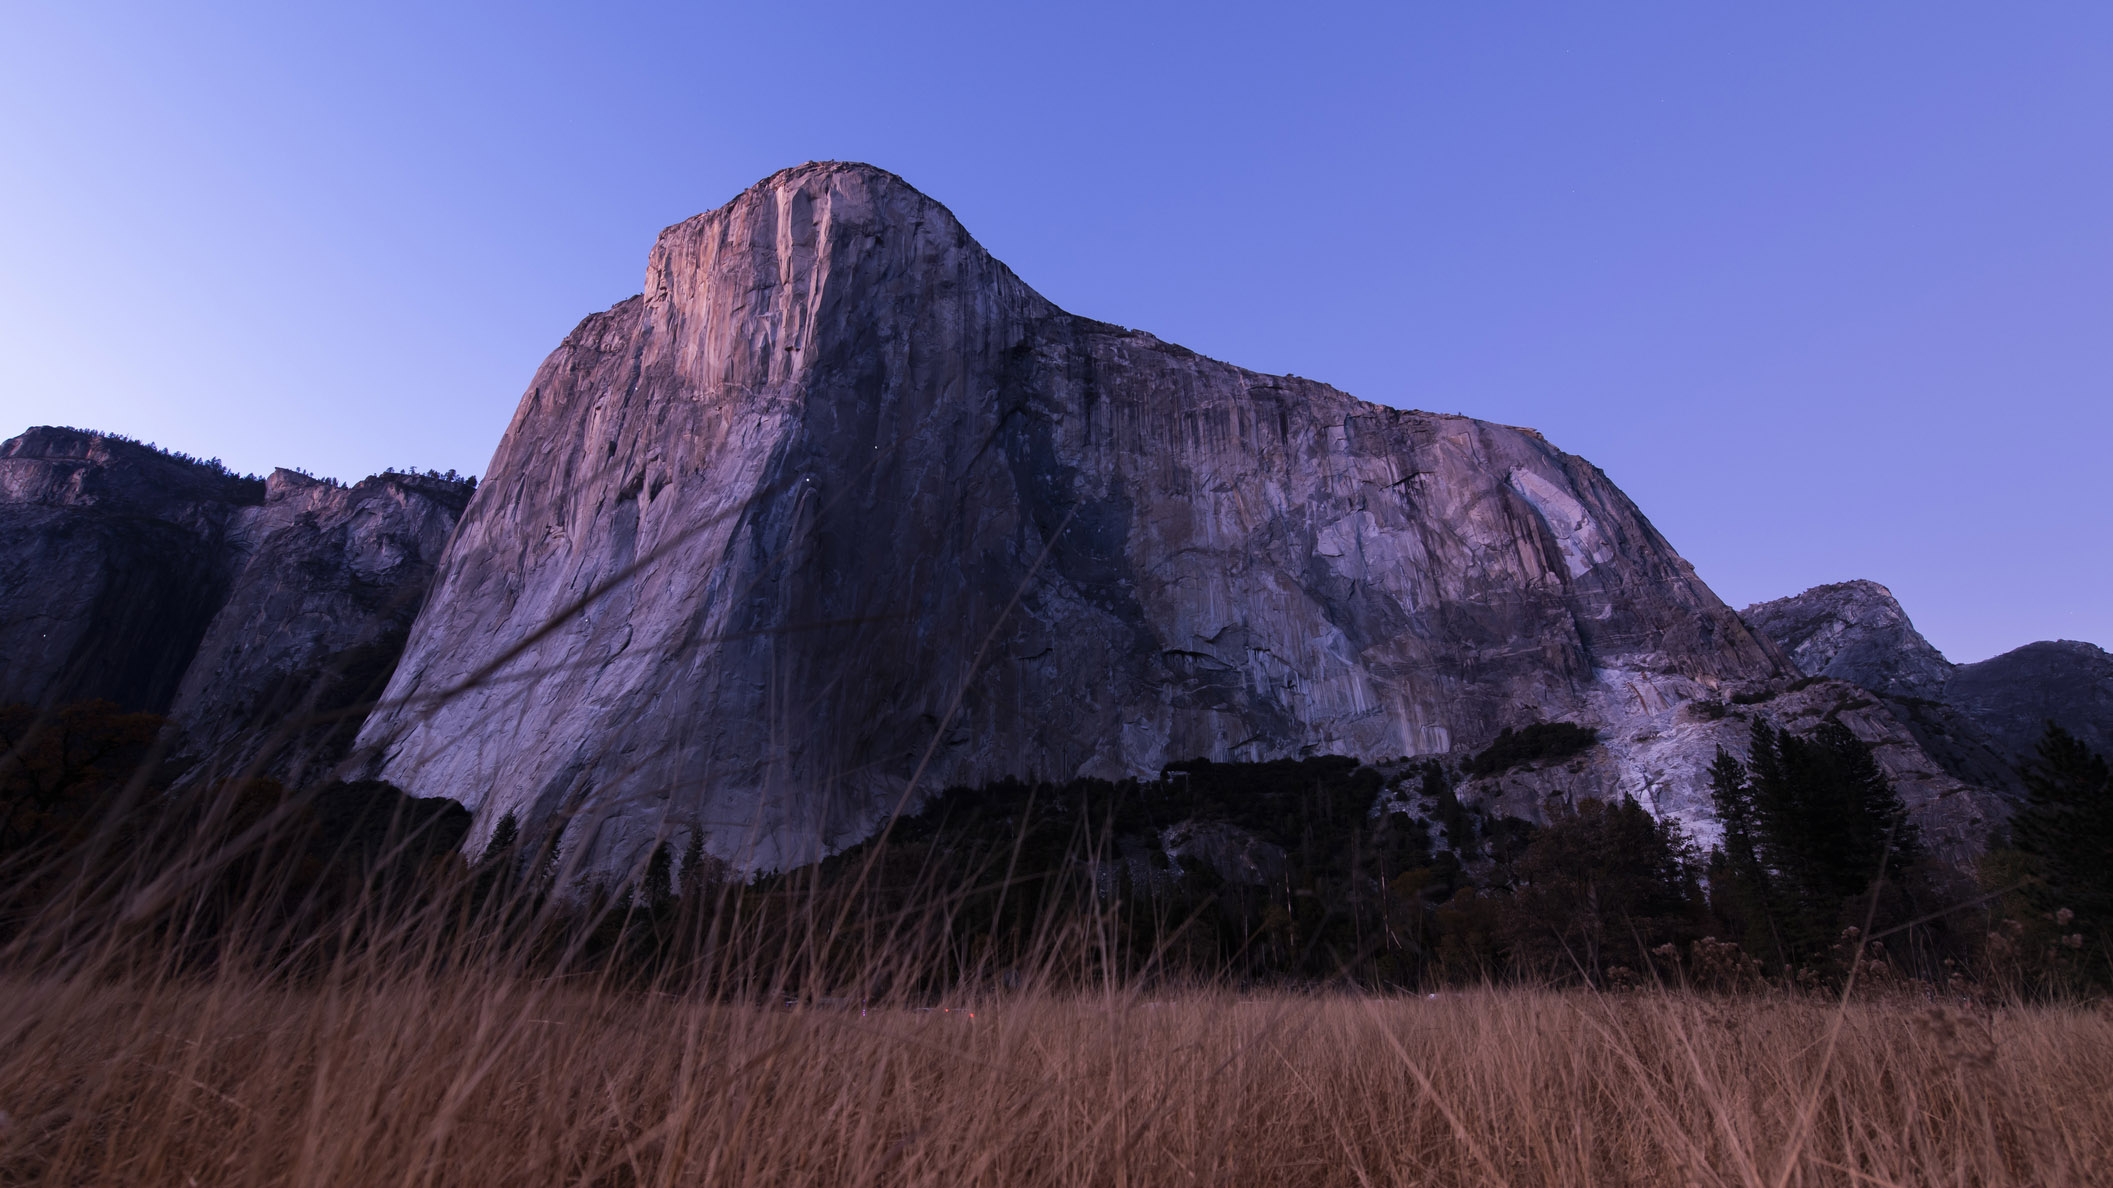 qué es la escalada tradicional: El Capitán, Yosemite